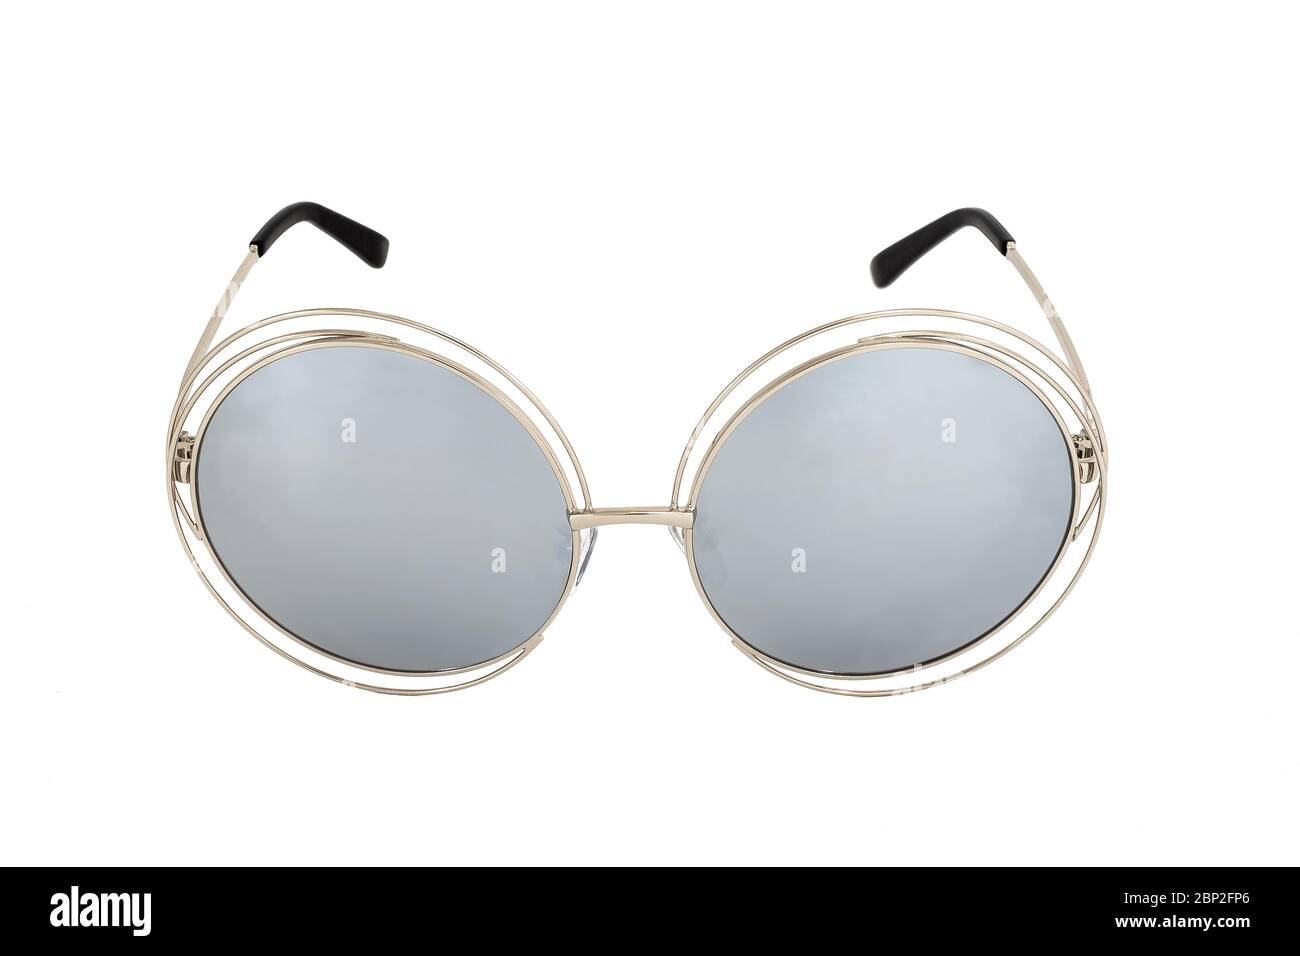 Gafas de sol de ojo de gato con lentes de color plata y marcos de metal  ovalados de color plata aislados sobre fondo blanco, vista frontal  Fotografía de stock - Alamy